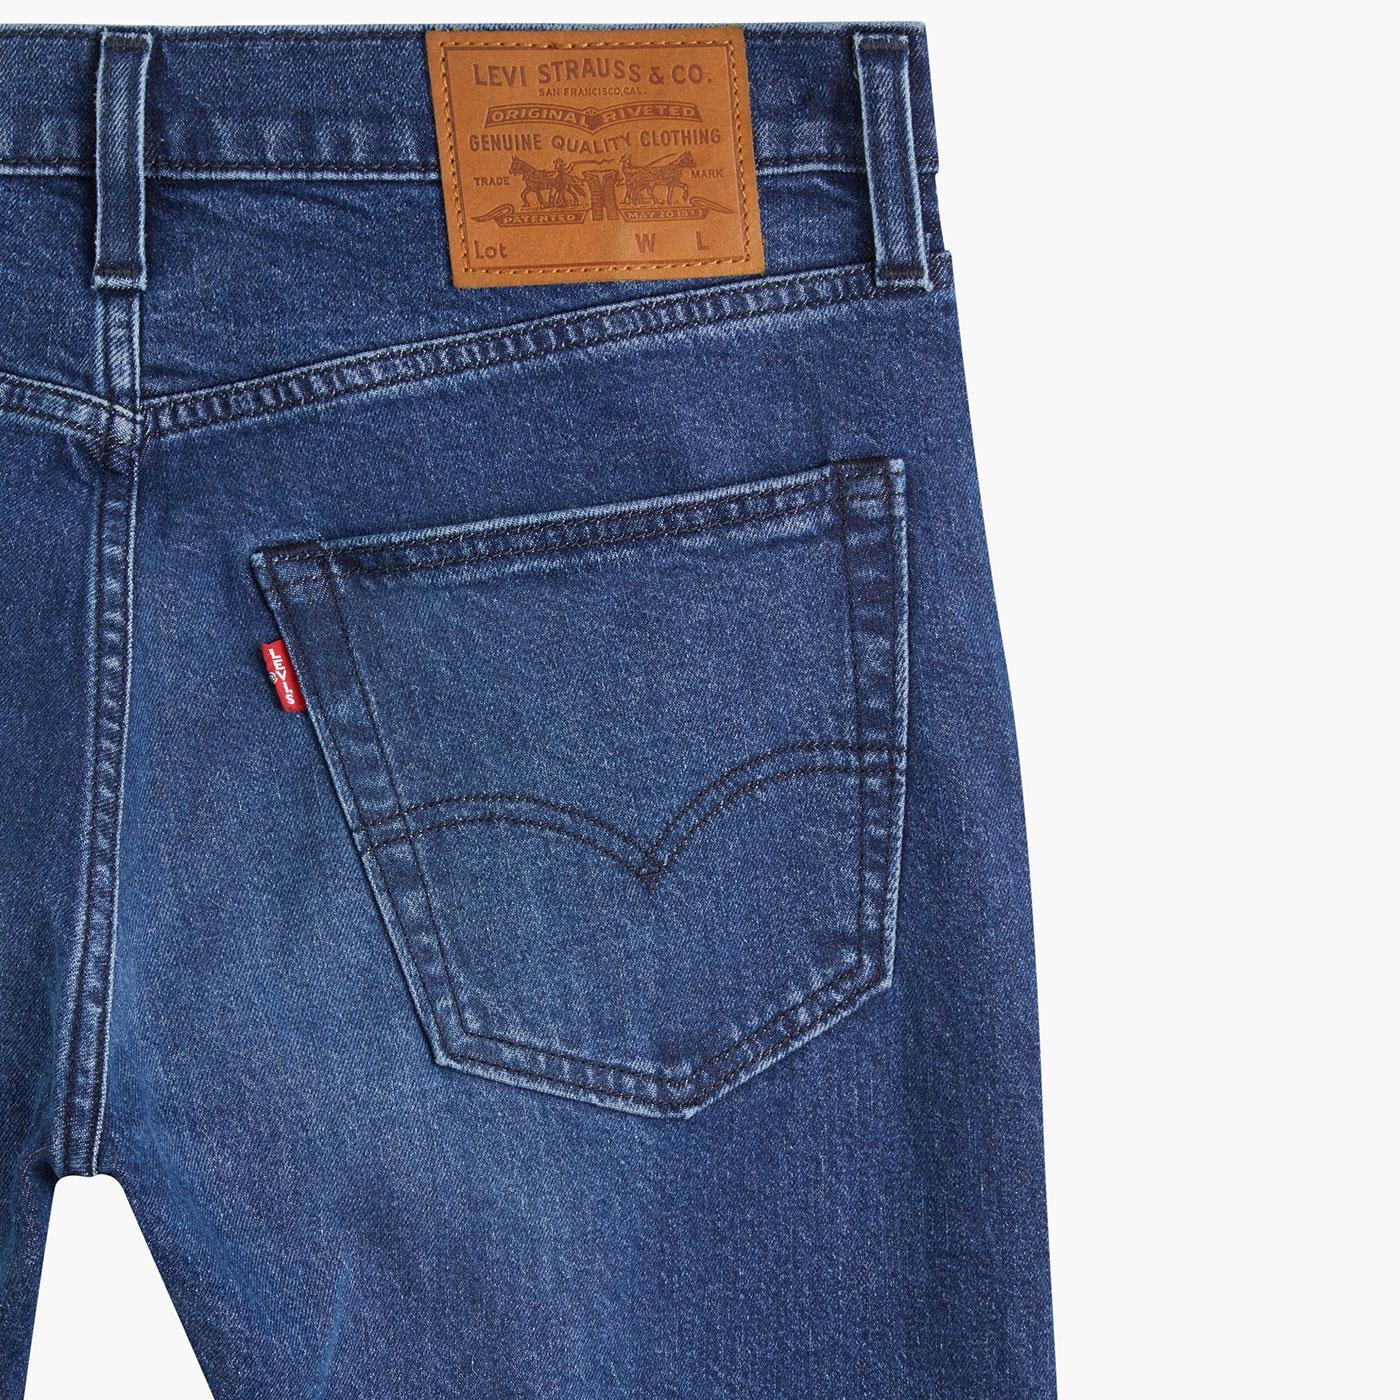 LEVI'S 502 Retro Mod Regular Taper Jeans in Paros Yours Adv